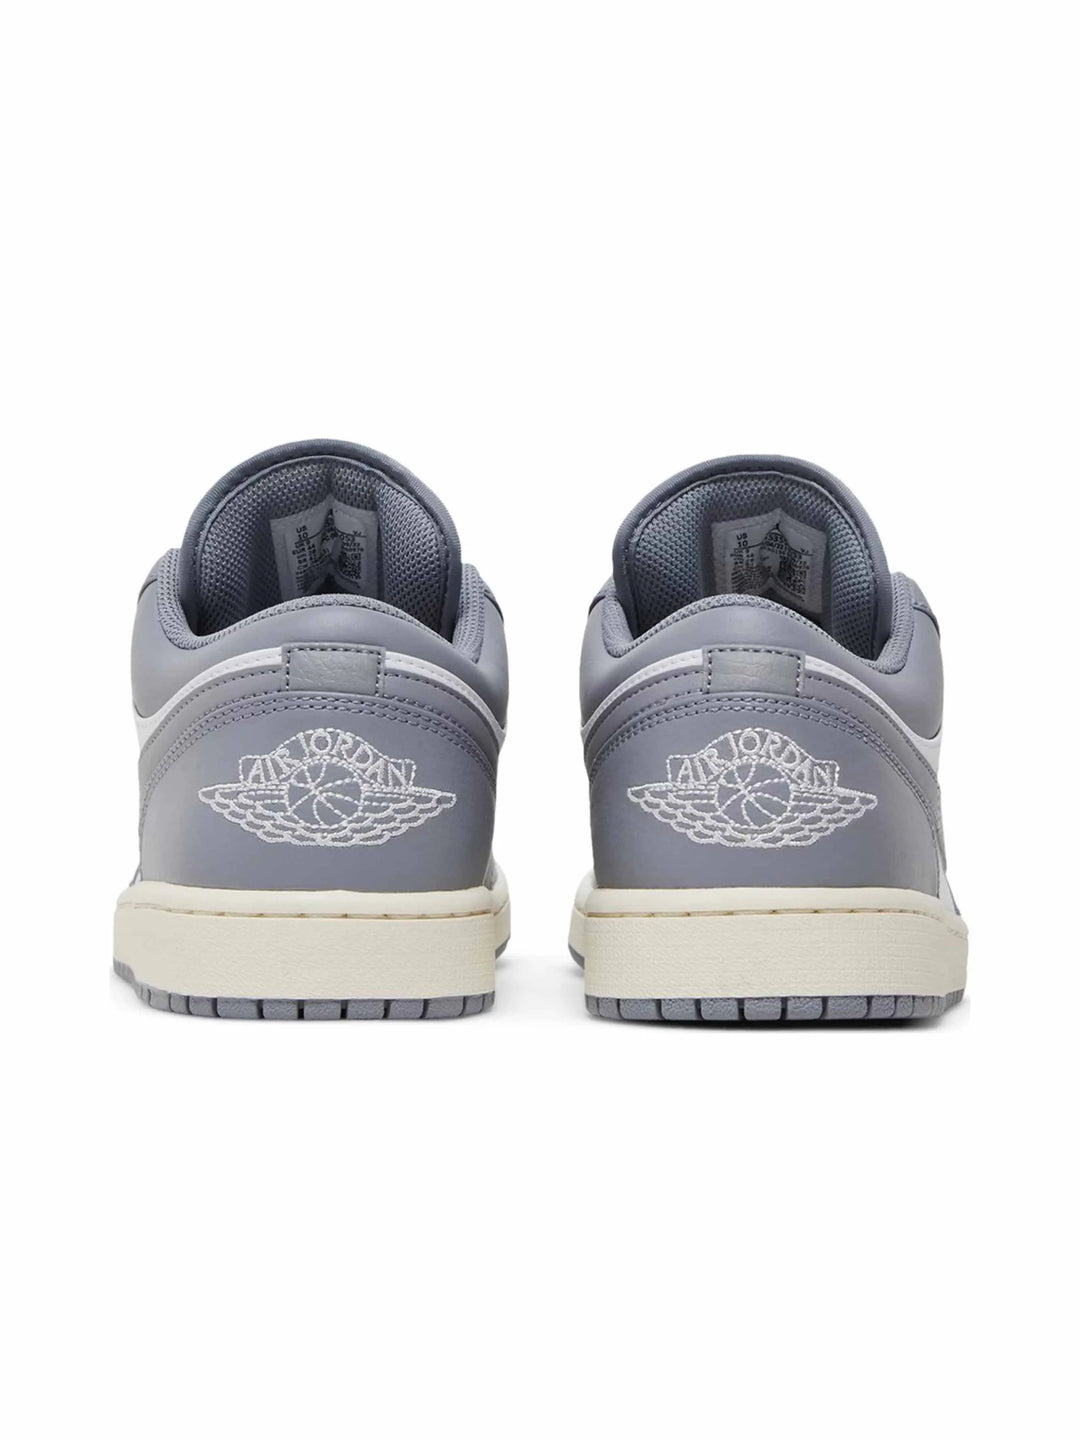 Nike Air Jordan 1 Low Vintage Stealth Grey - Prior